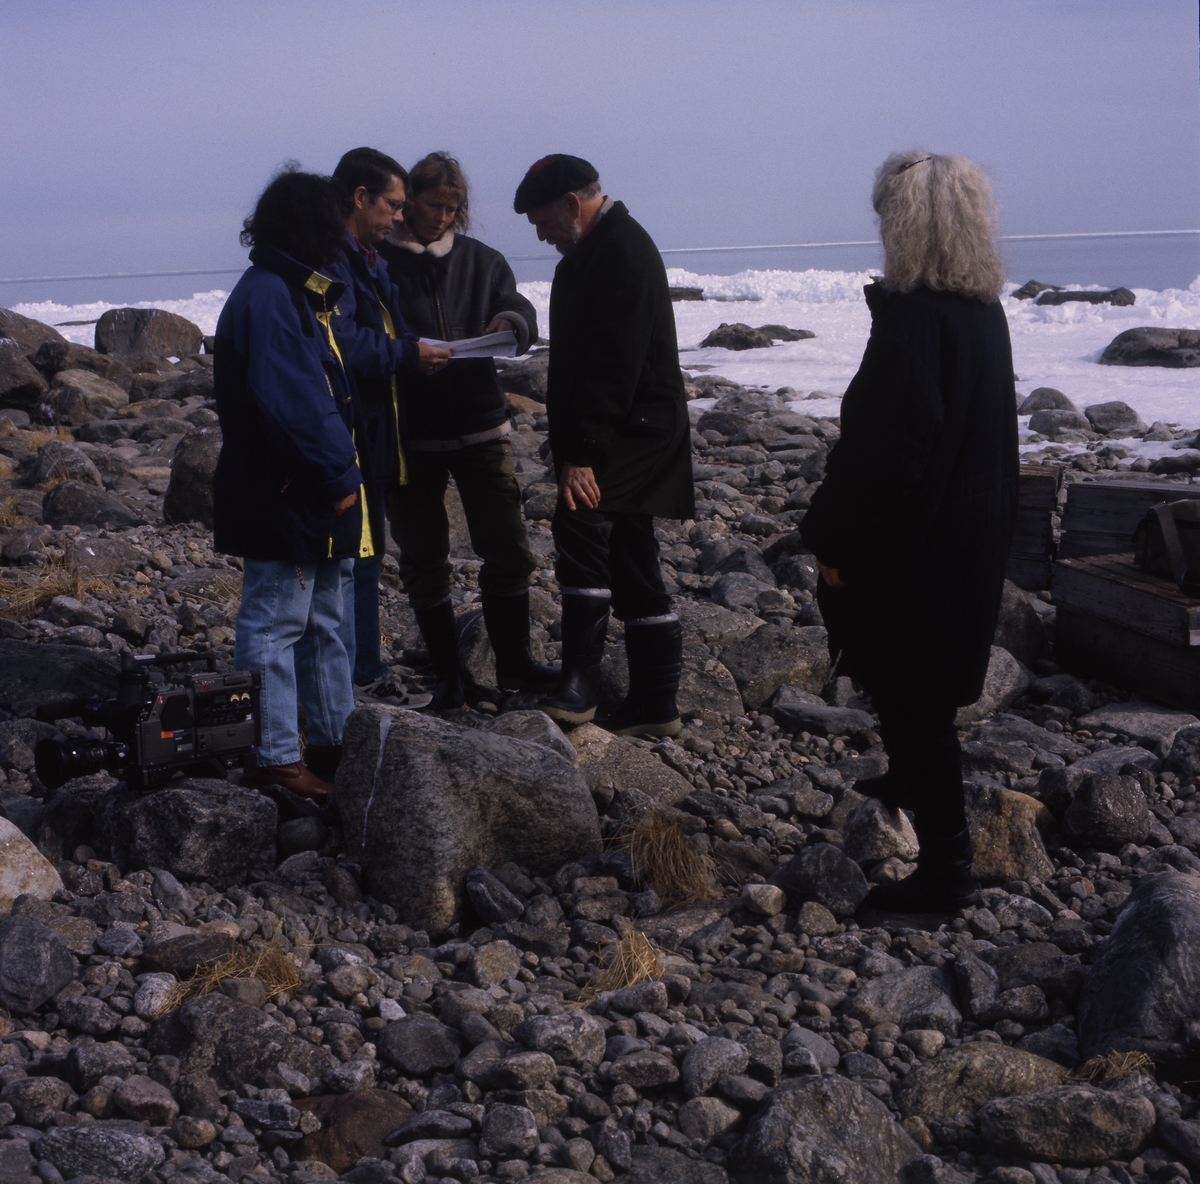 Inspelning av TV-programmet "Mitt i naturen" på Lörudden, Njurunda 15 april 1996. Programmet handlade om naturen i Sverige och världen och startade 1980. Här står Tv-teamet samlat och diskuterar.